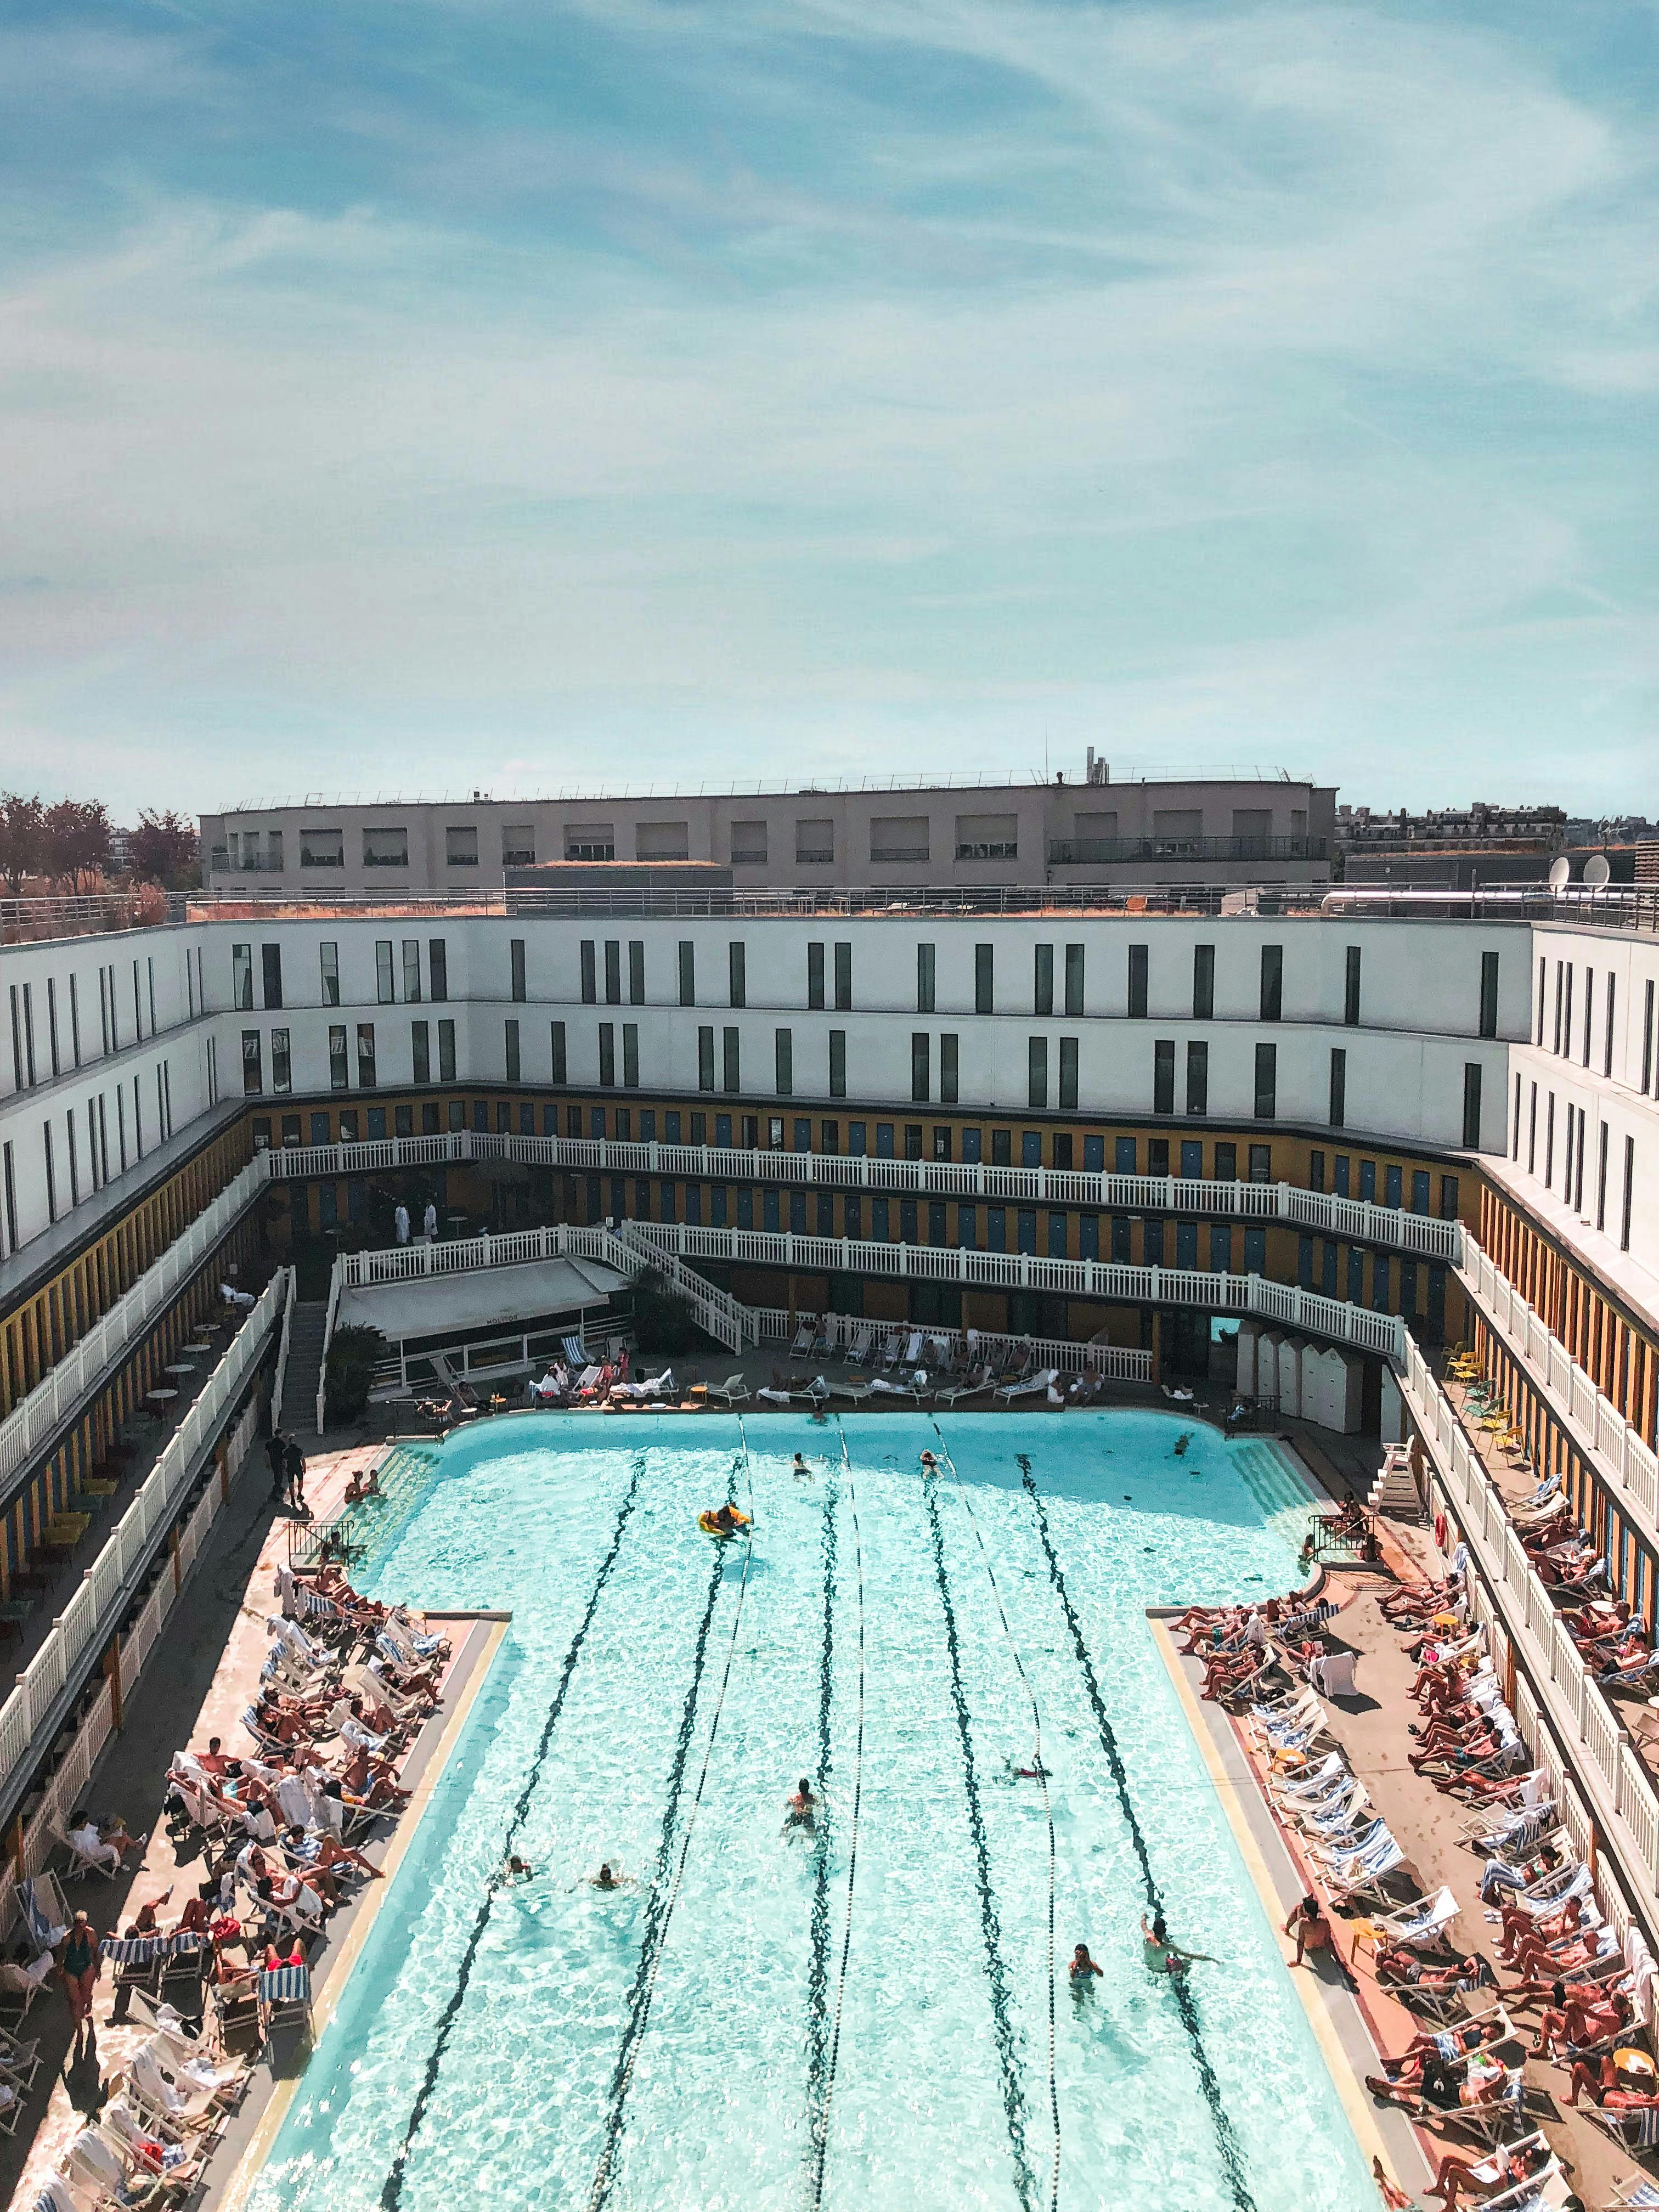 Hotel i piscina. Font: Pexels - Vincent Rivaud